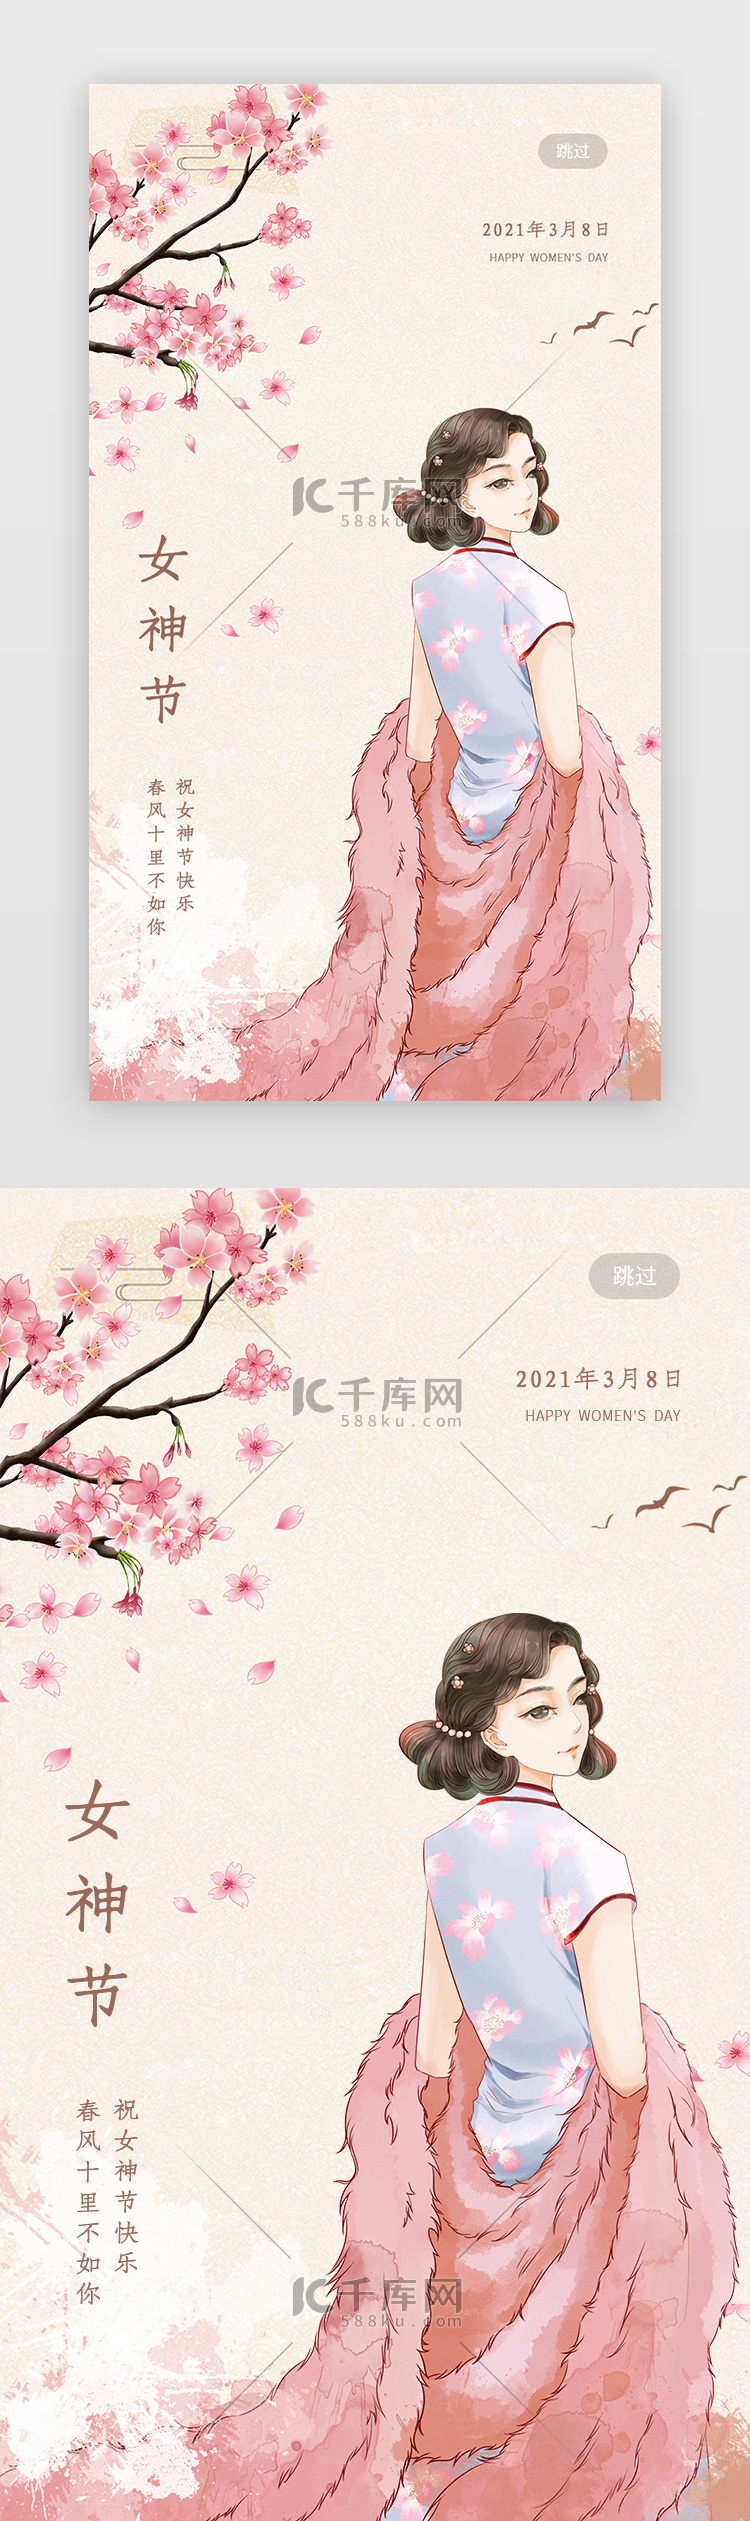 妇女节闪屏中国风粉色旗袍女孩